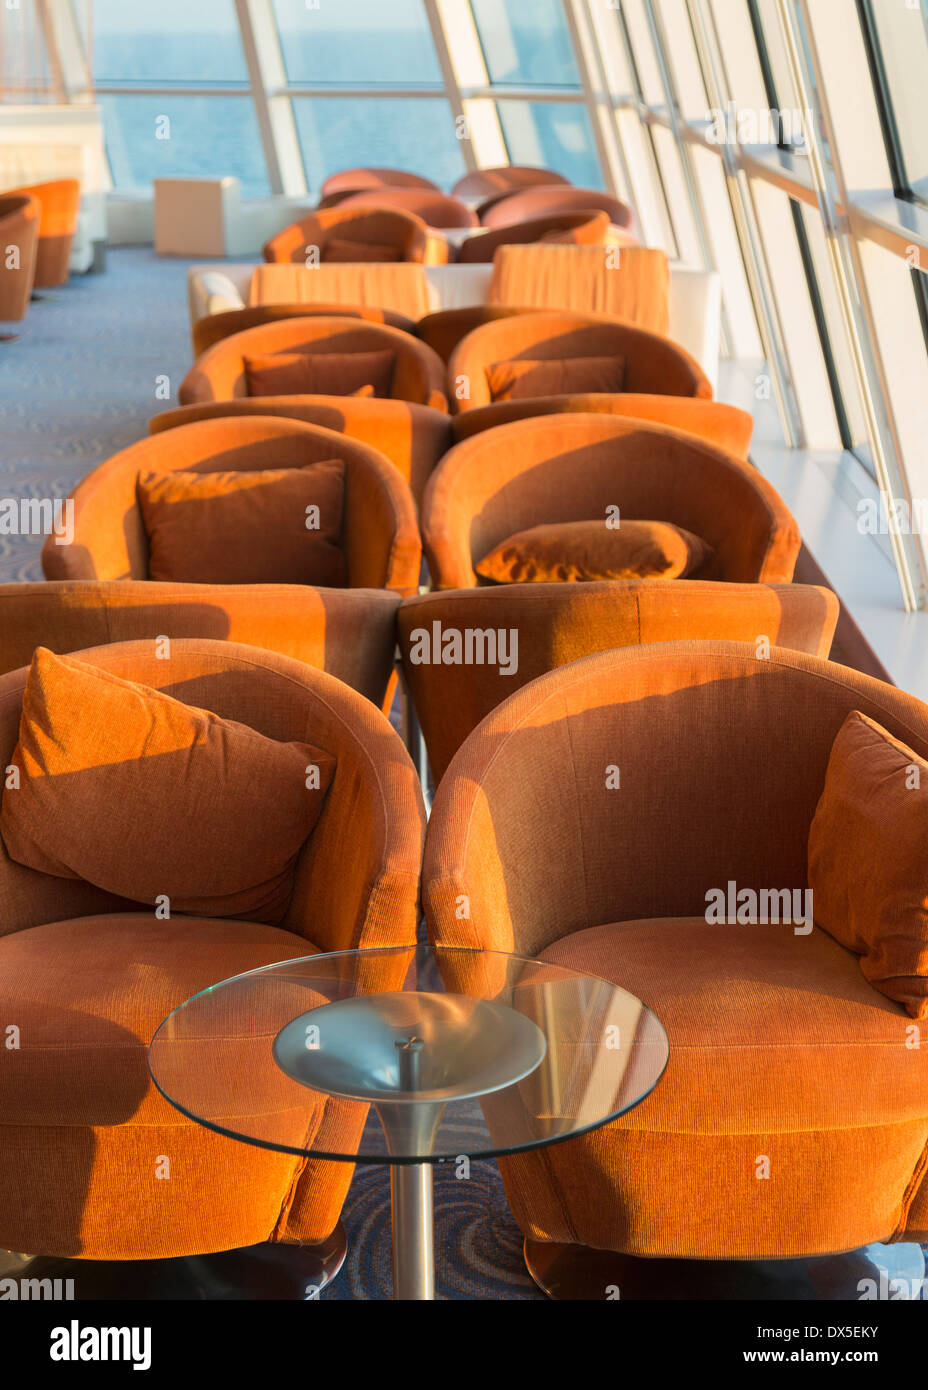 L'intérieur de navires de croisière - Rangée de tables et chaises sur un bateau de croisière, USA Banque D'Images